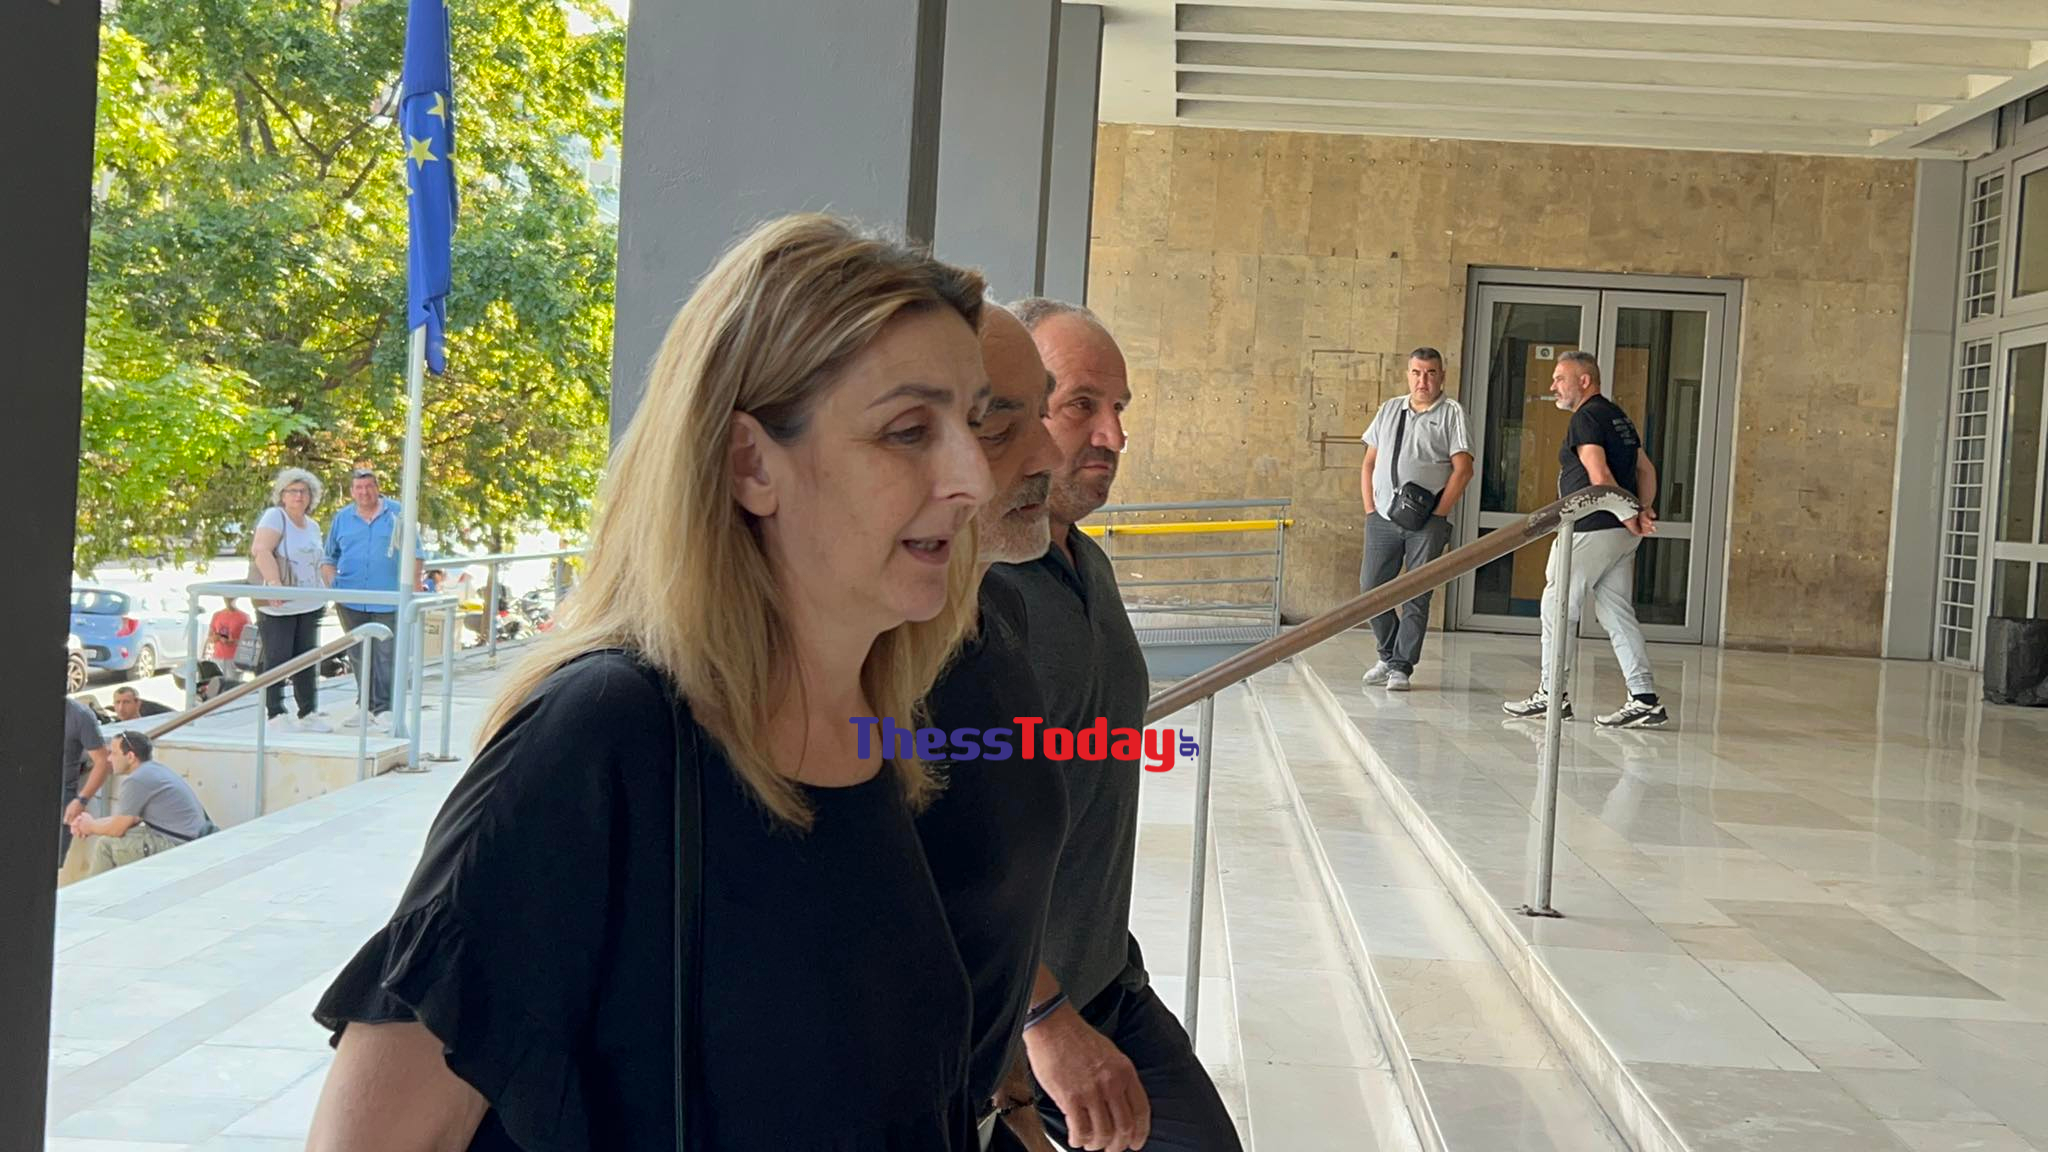 Algis Campanos: His parents are in court